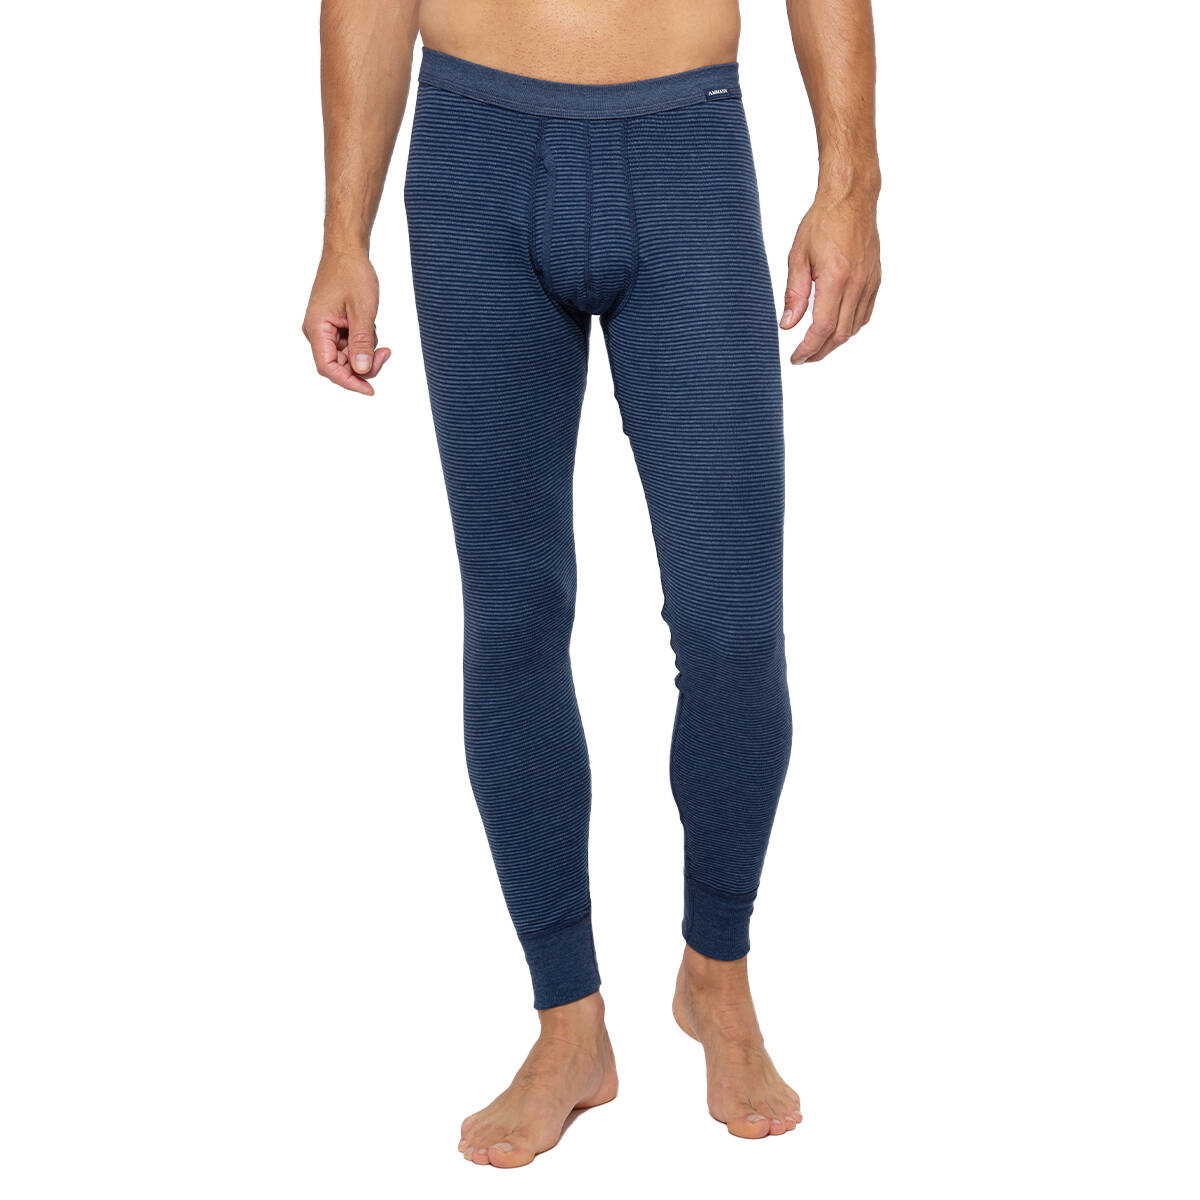 AMMANN - Jeans - Unterhose lang mit Eingriff, 27,95 €